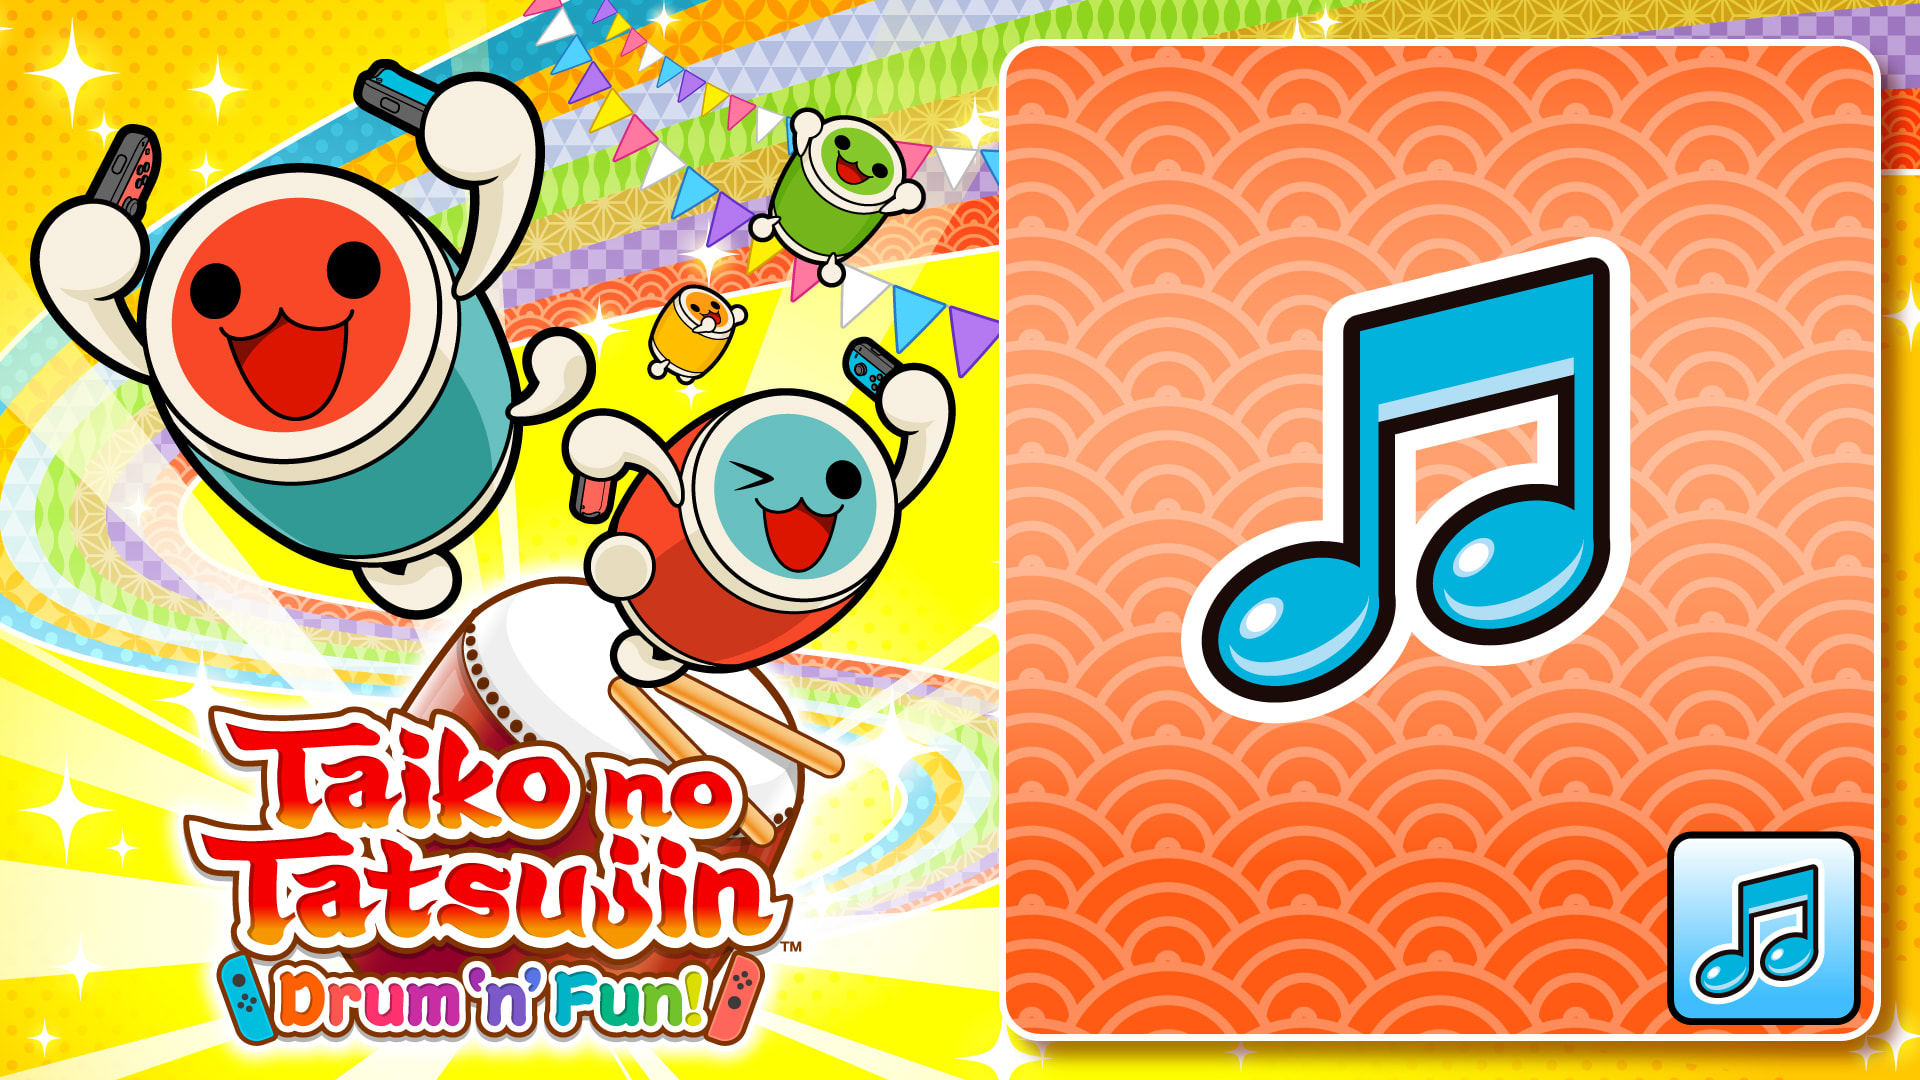 Taiko no Tatsujin: Drum 'n' Fun! Resound! Taiko no Tatsujin! (20th Anniversary Song)